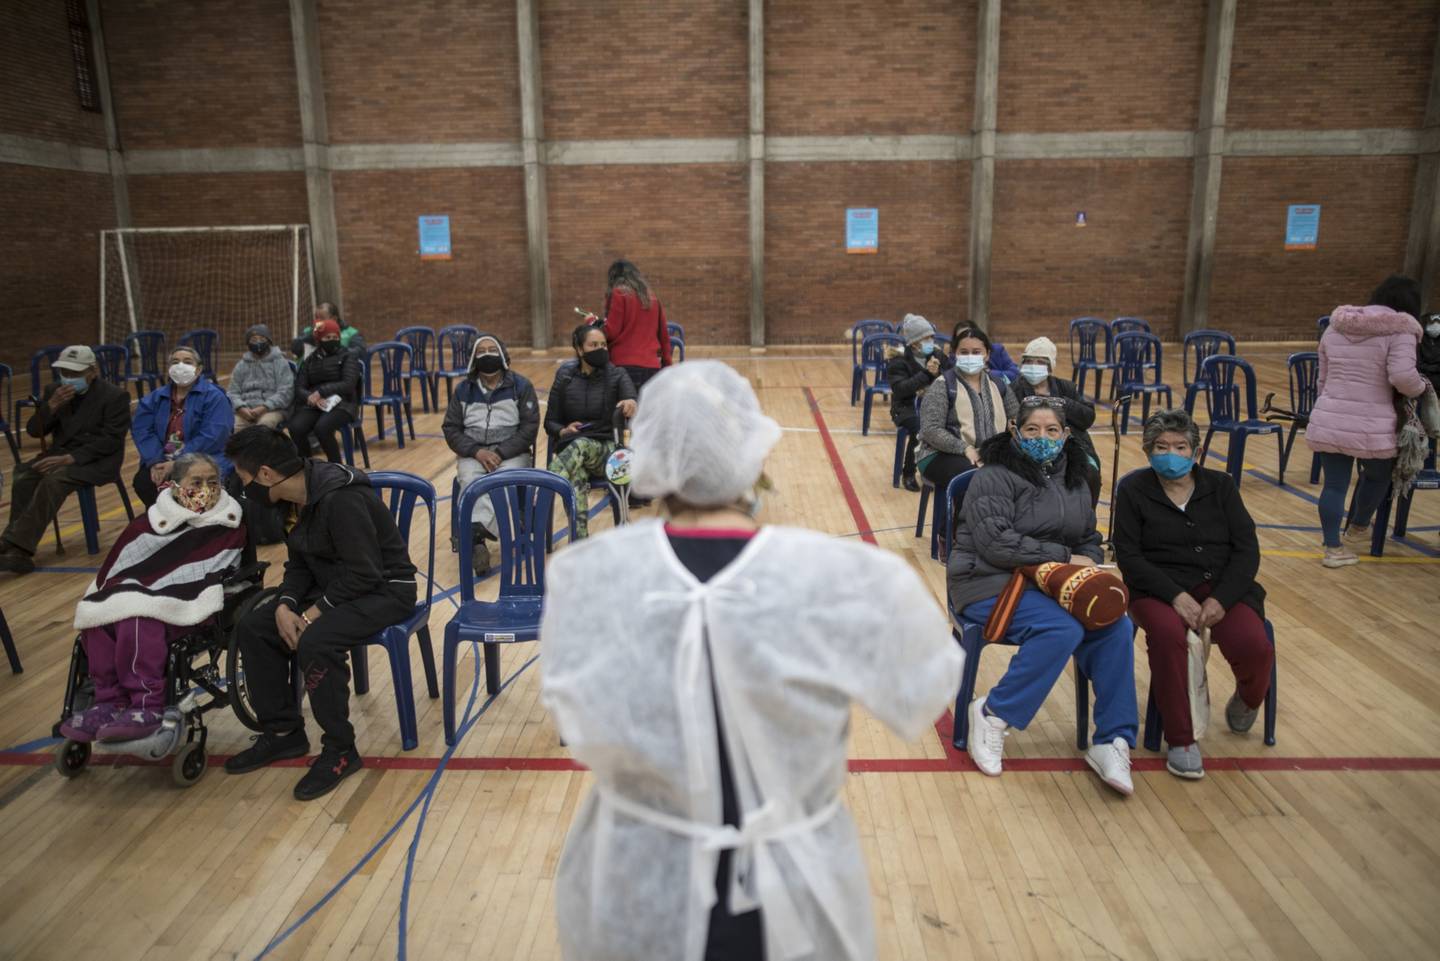 Los pacientes esperan en el área de observación después de recibir una vacuna contra el covid-19 en el Coliseo Cayetano Cañizares en Bogotá, Colombia, el viernes 12 de marzo de 2021.